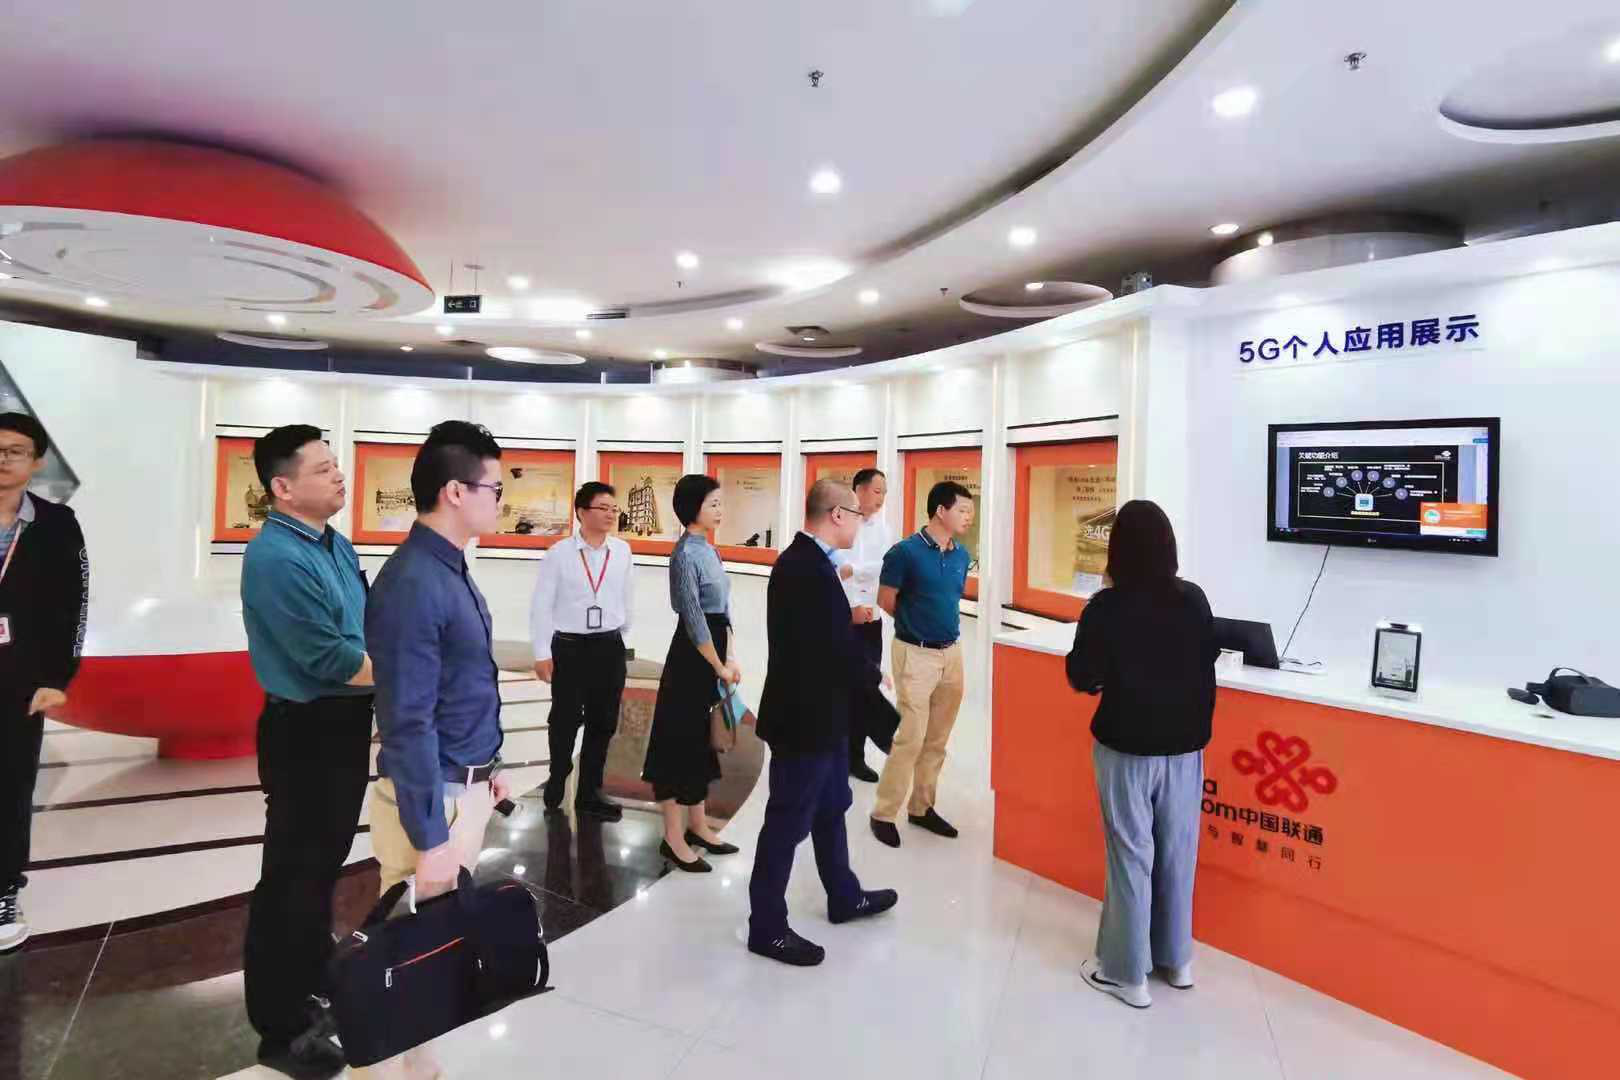 热烈祝贺广东四海资讯网址导航科技与珠海联通签署战略合作协议